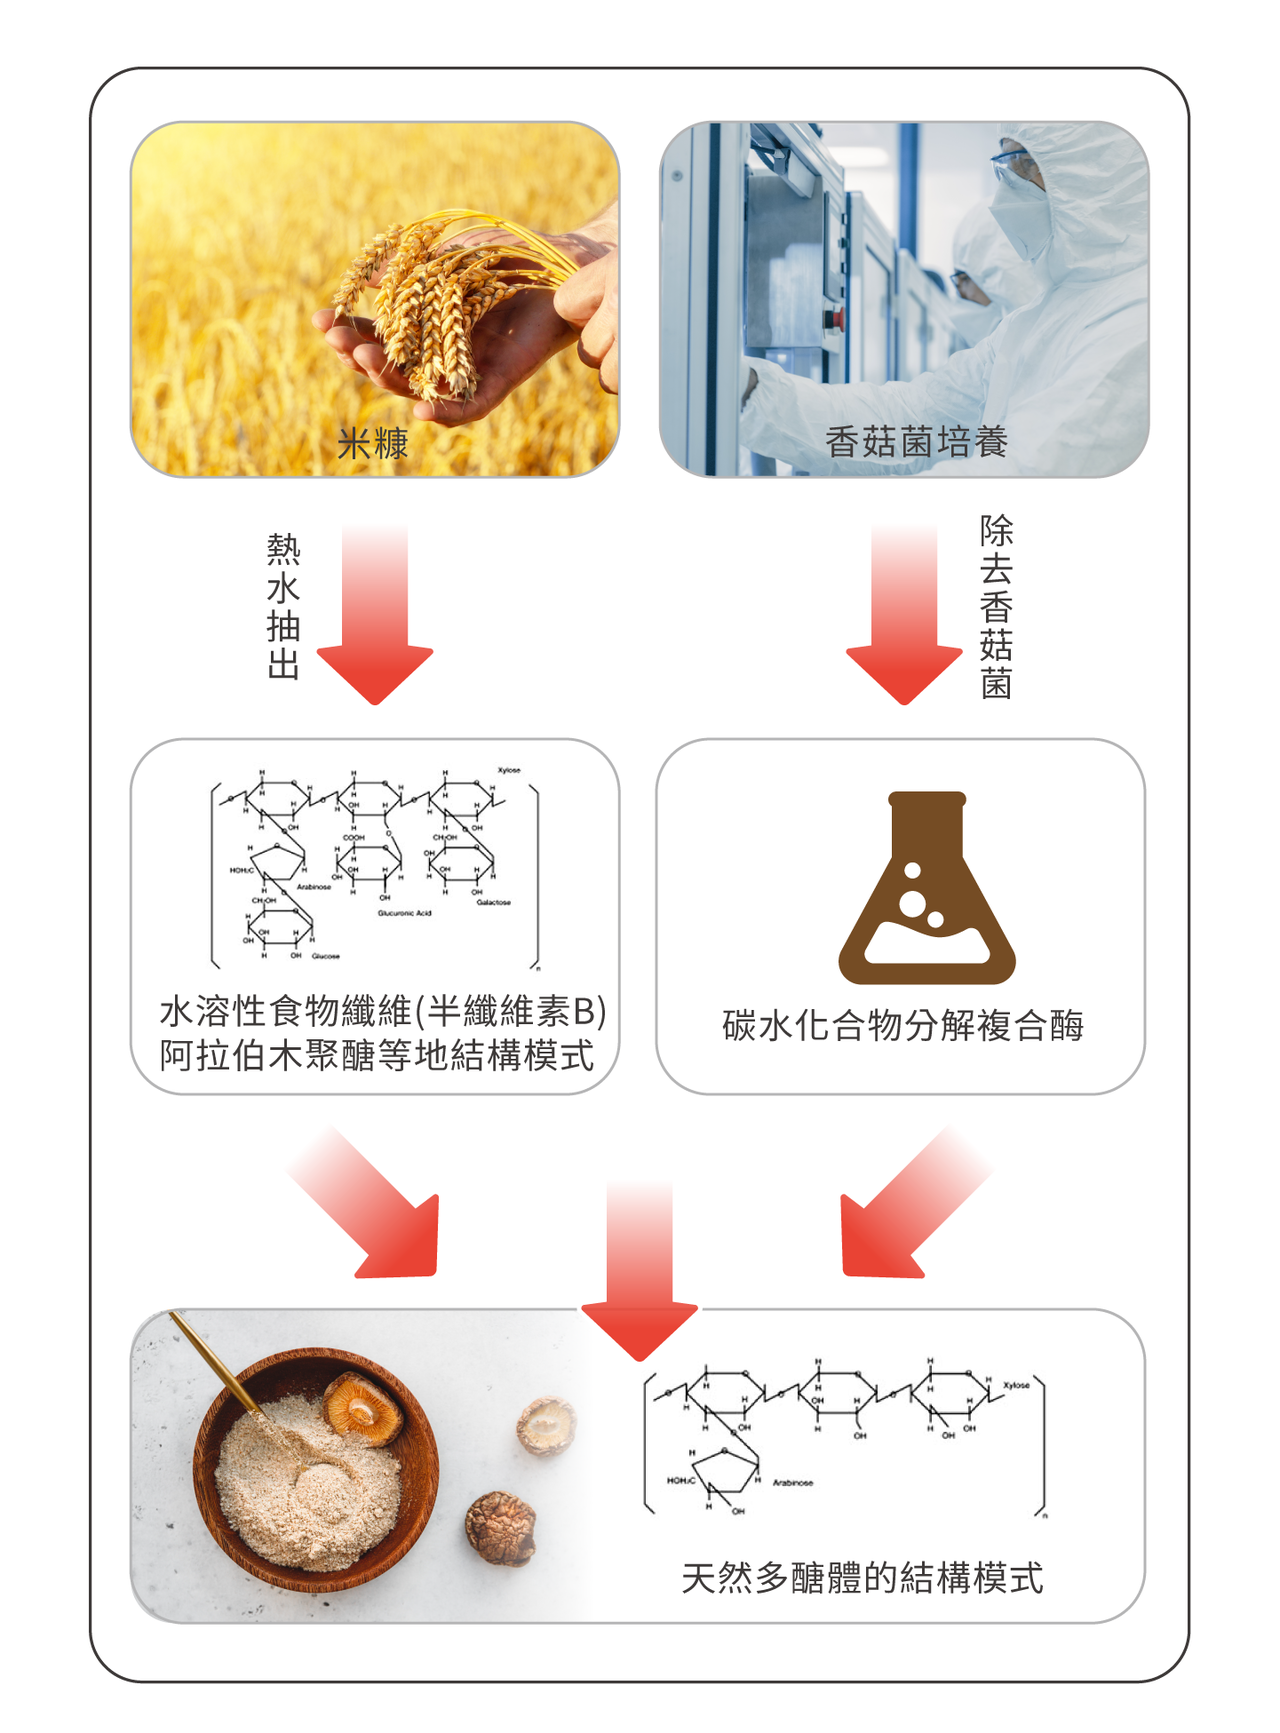 米蕈多醣體的獨特製作方法